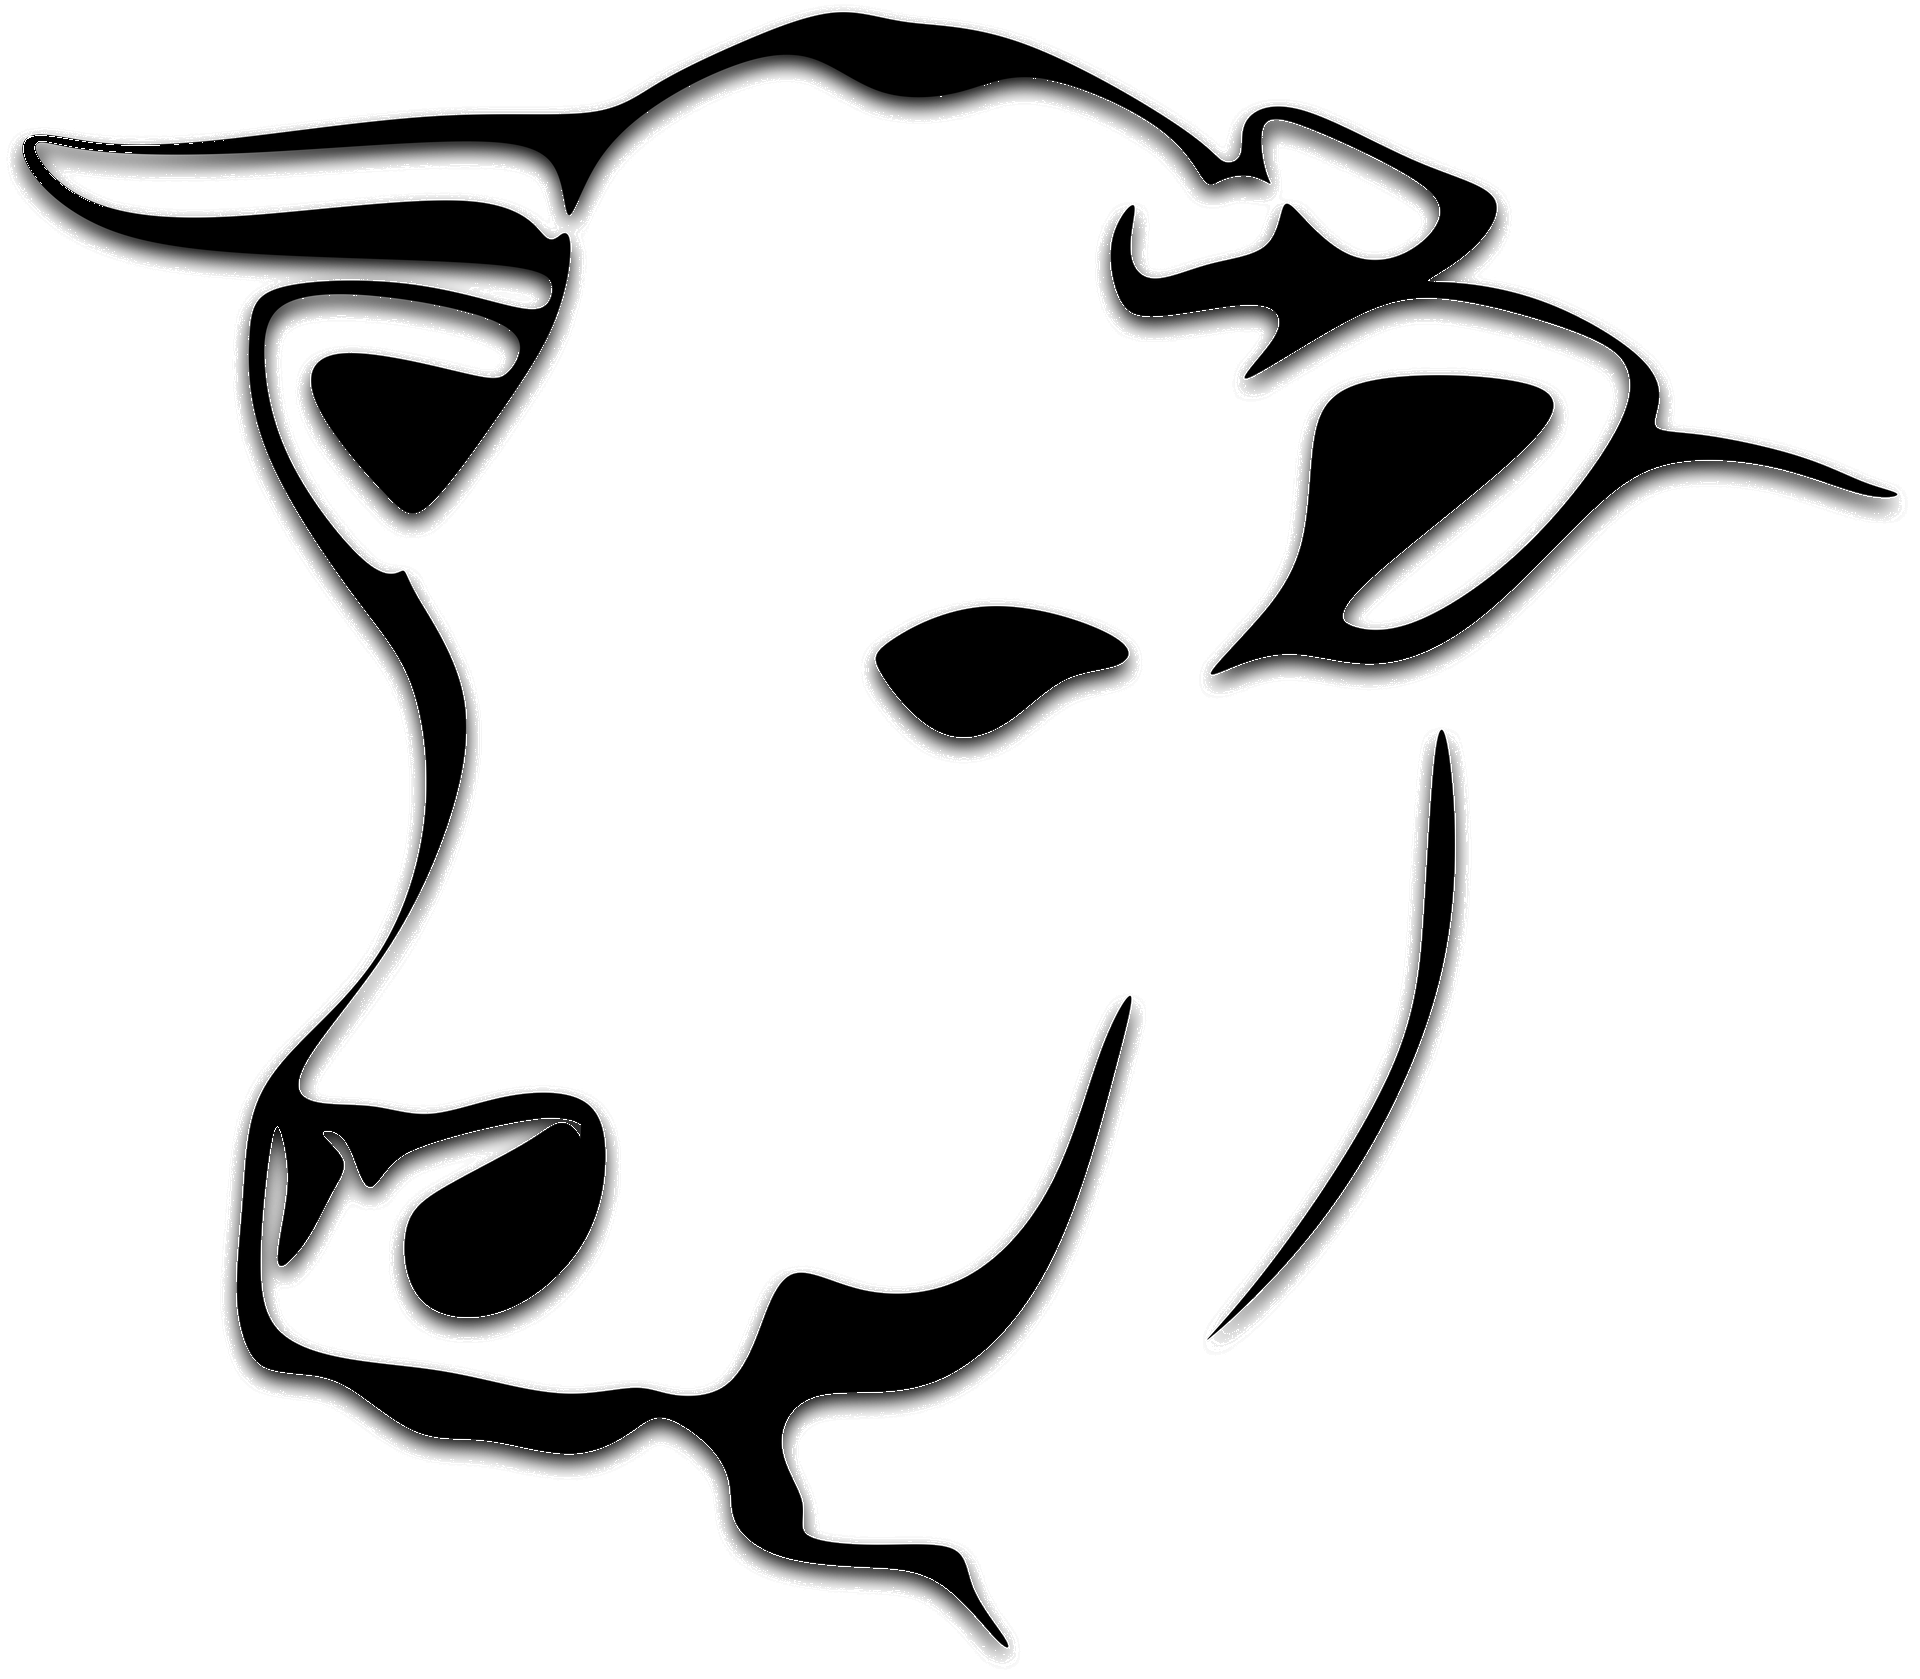 Cow Head Sketch Coloring Page